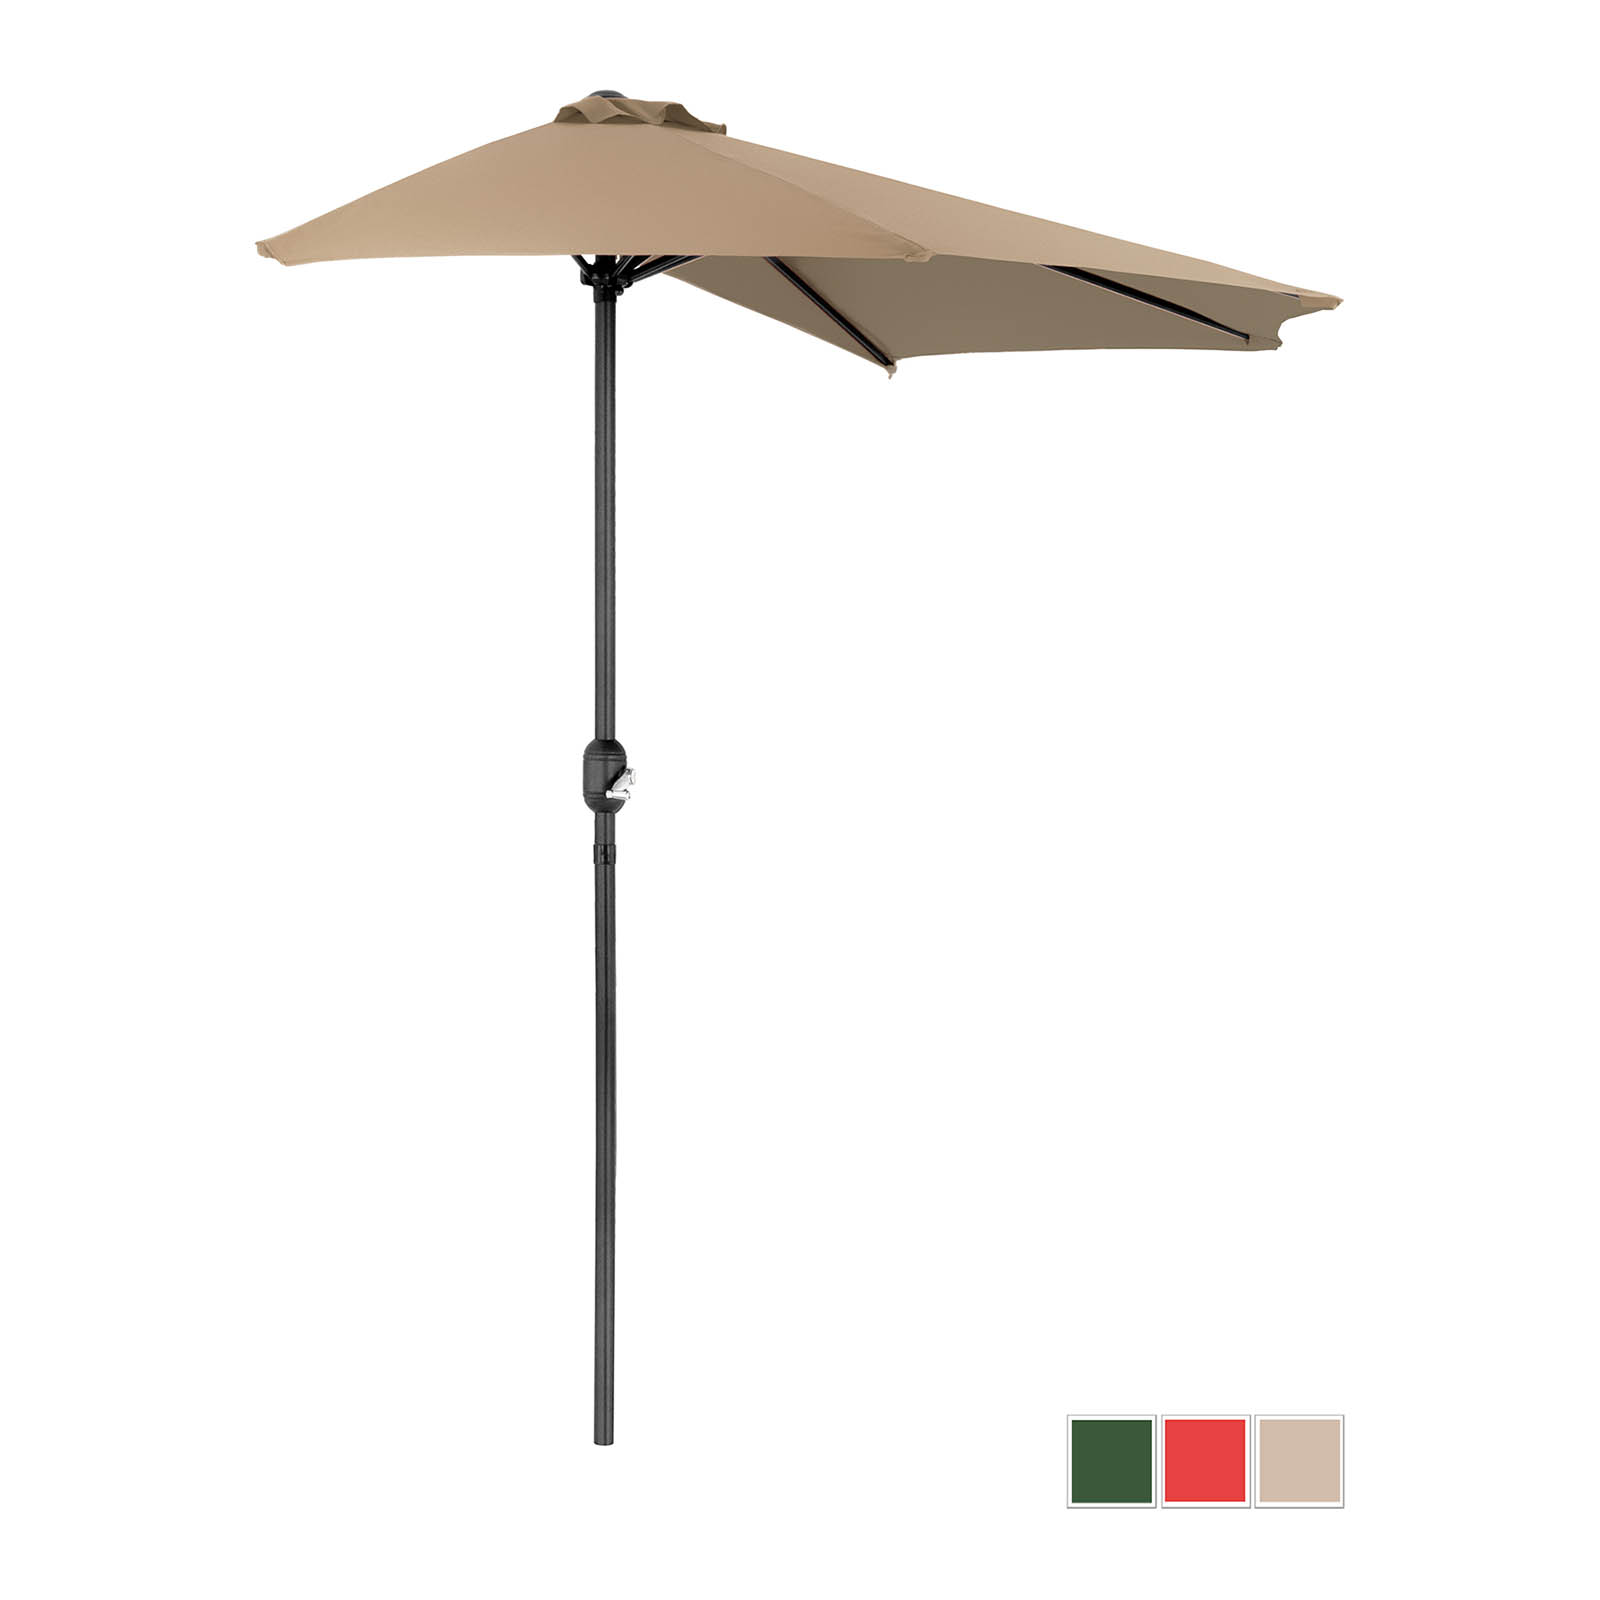 Halv parasol - Taupe - femkantet - 270 x 135 cm